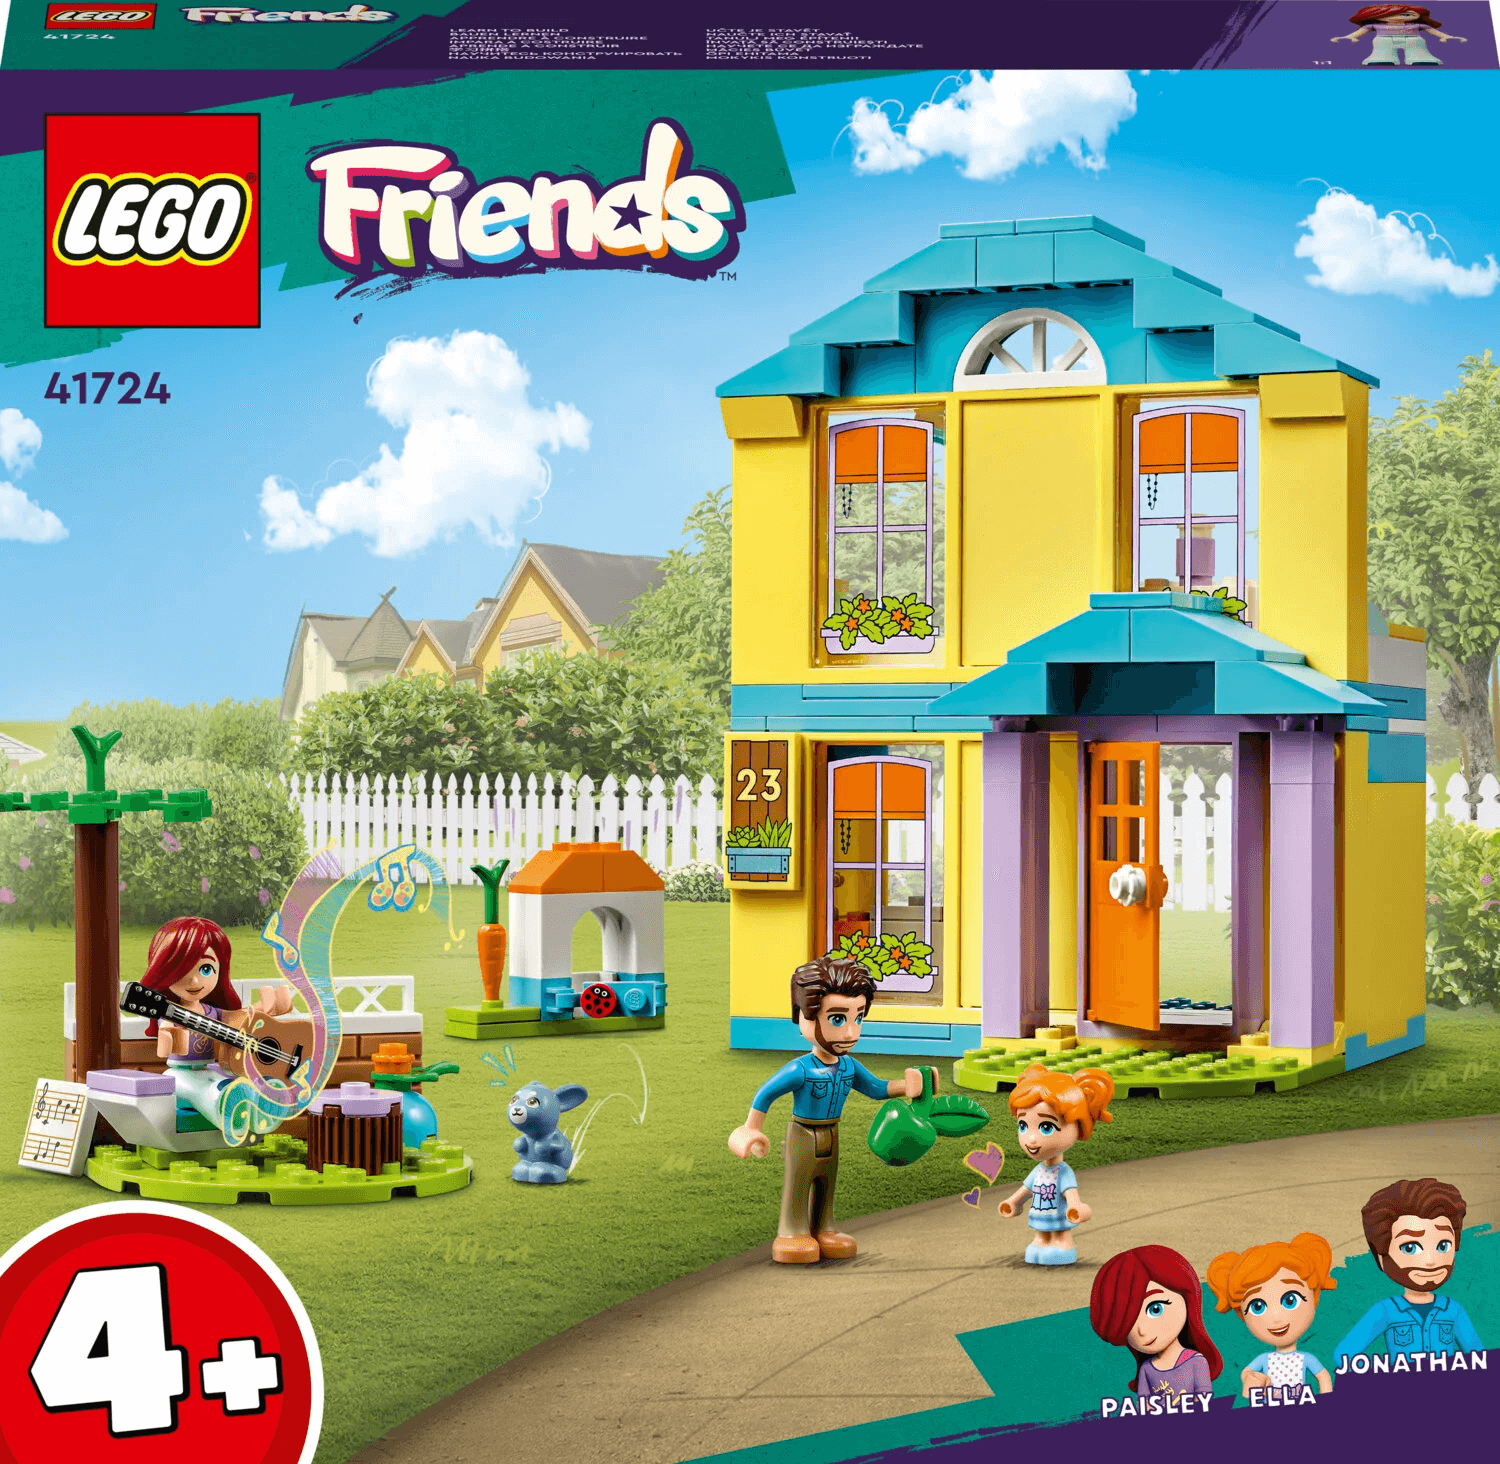 Конструктор LEGO Friends Дом Пейсли 41724, 185 деталей конструктор lego friends дом пейсли